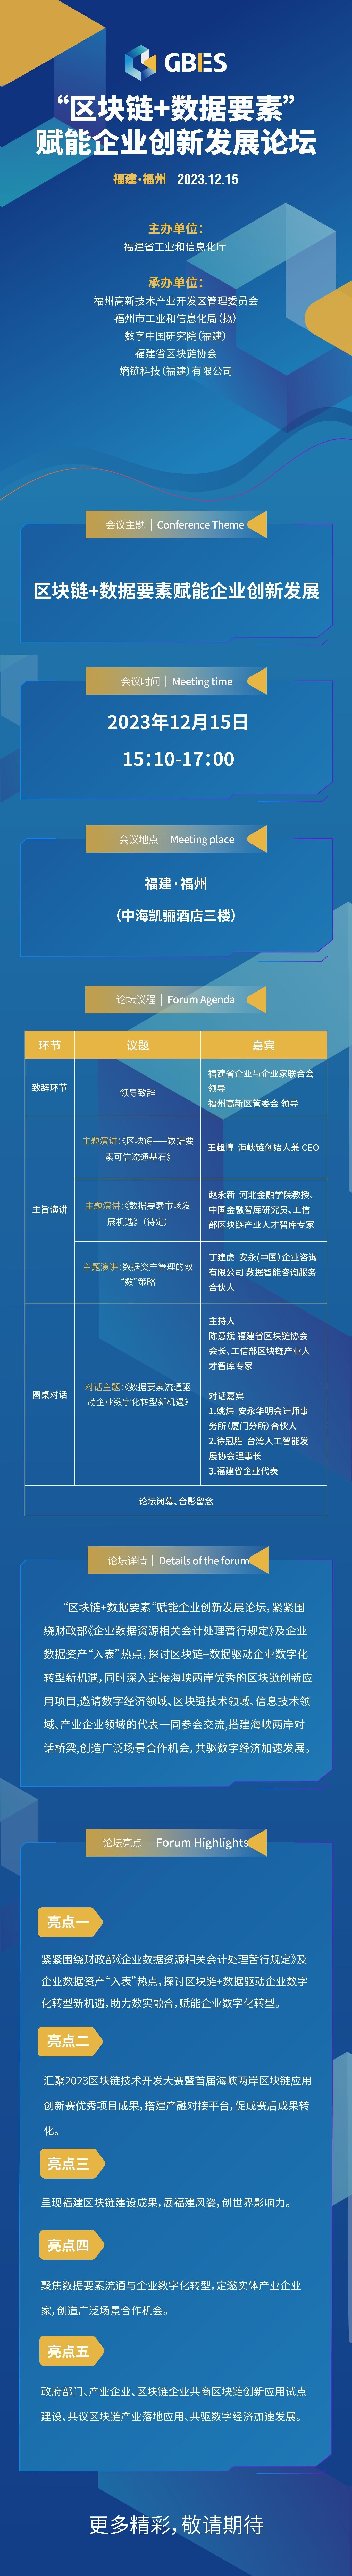 12月15日相约榕城—“区块链+数据要素”赋能企业创新发展论坛即将启幕